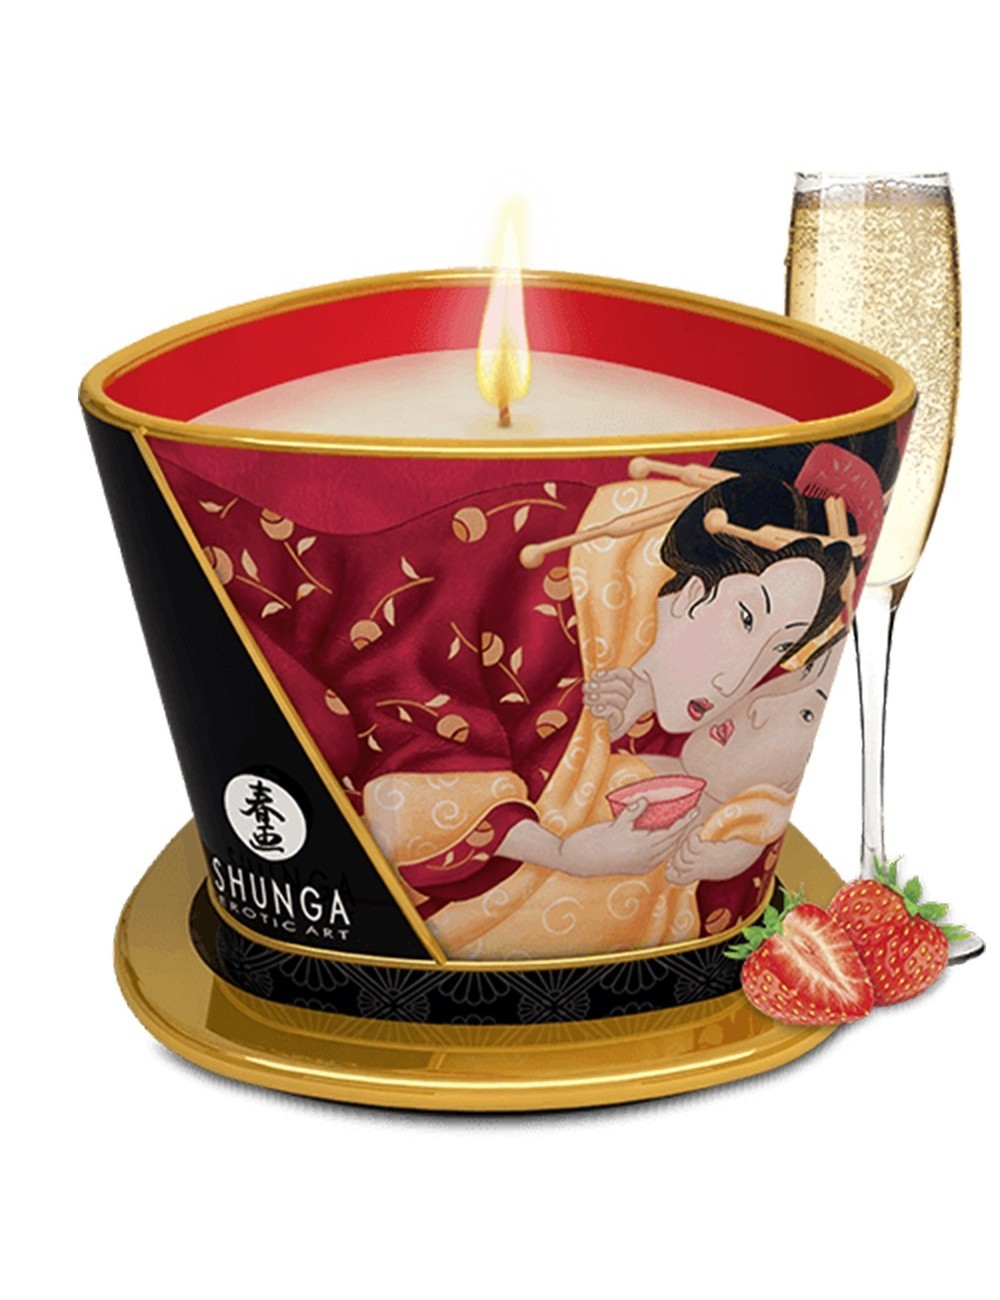 Bougie de massage fraise vin pétillant 170ml - CC824508 - Bougies de massage - Shunga